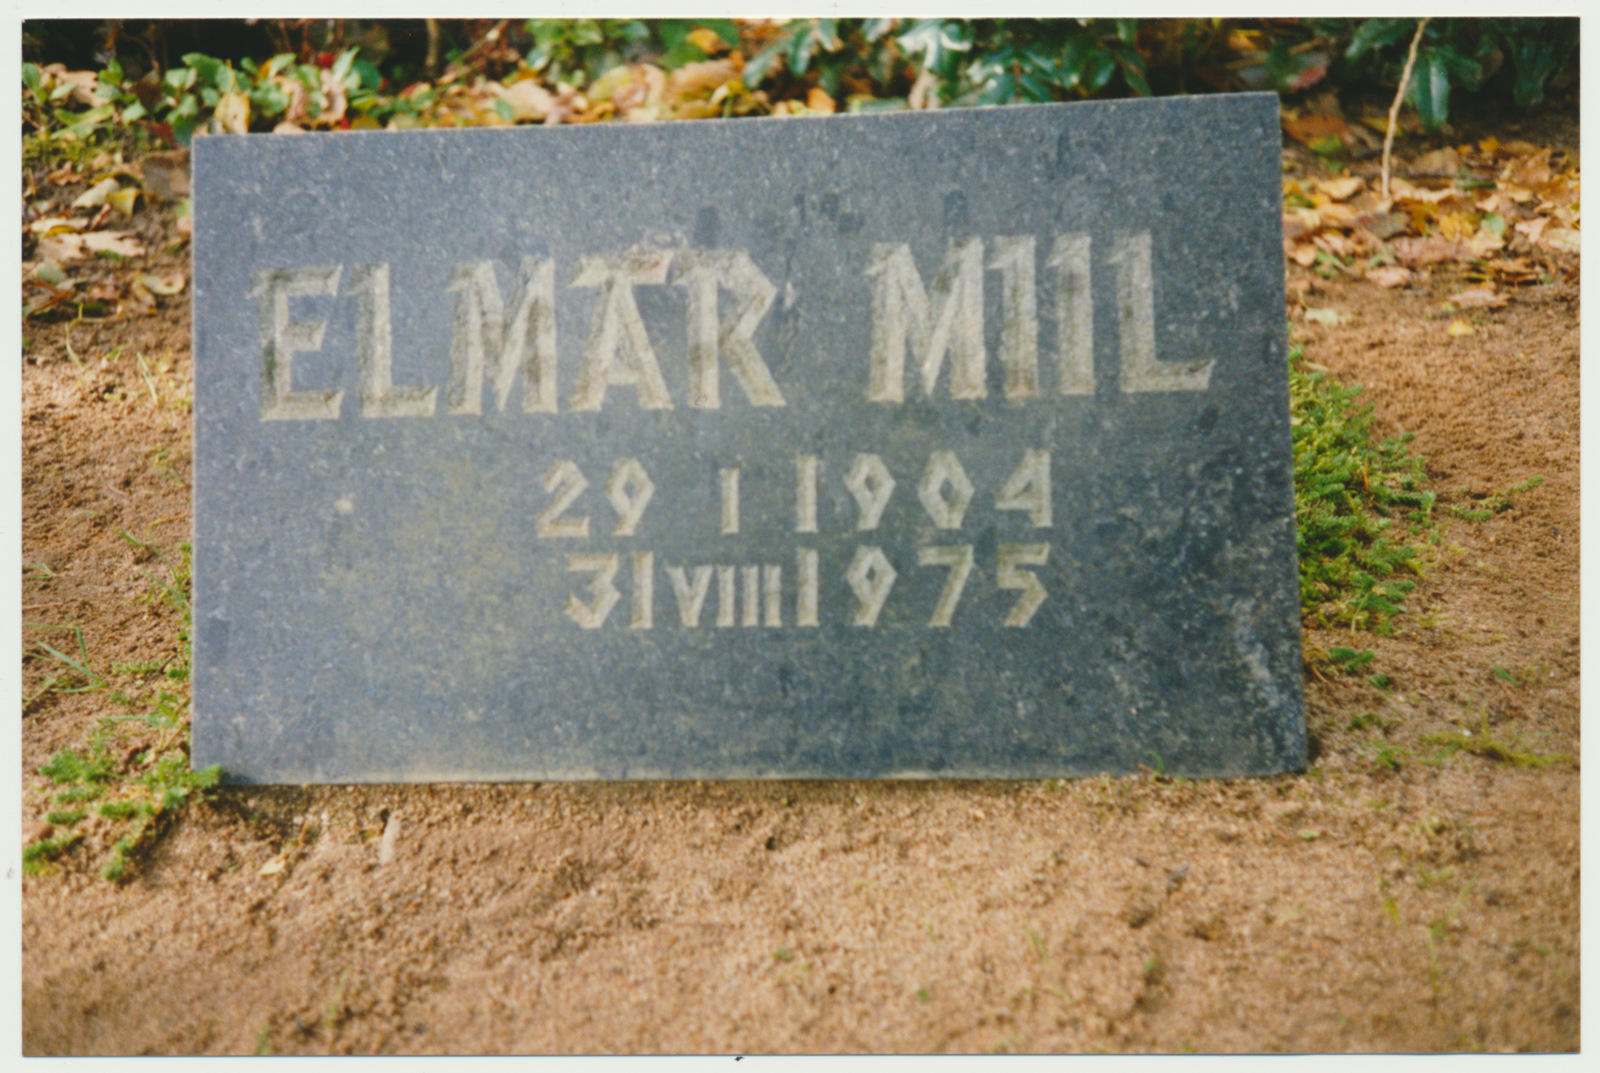 foto, Viljandi, Vana kalmistu, hauaplaat Elmar Miil, 1993, foto J. Pihlak, värviline